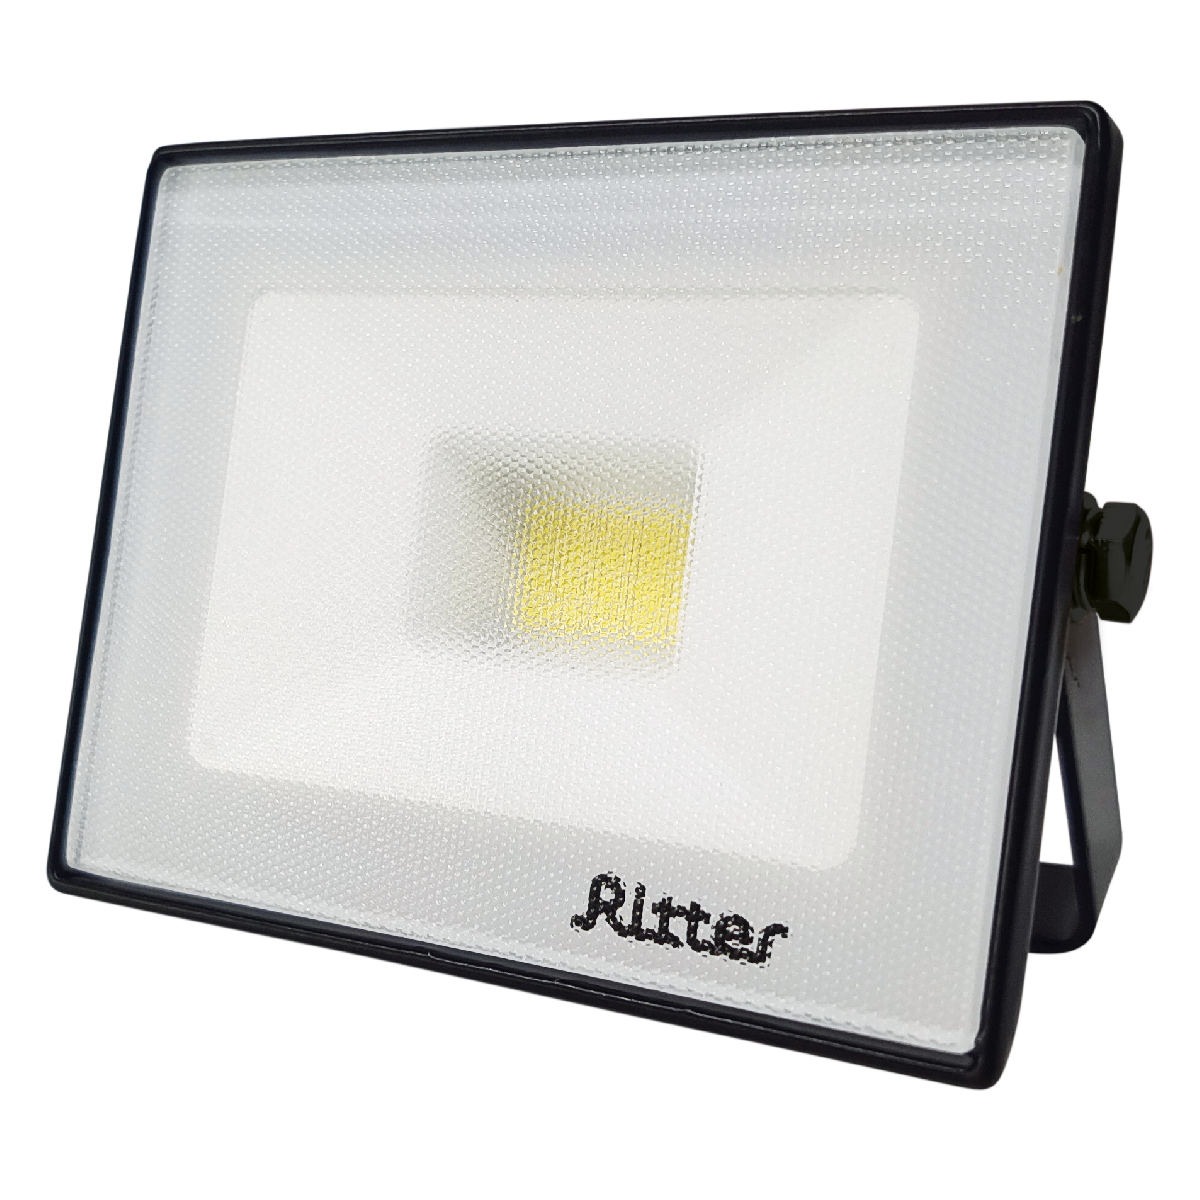 Прожекторы ritter. Прожектор Ritter Profi 534147. Прожектор светодиодный уличный Ritter Profi 53417 8 50 Вт. Прожектор светодиодный СДО-3-100 100вт 220-240в 6500к 10000лм ip65 ASD. Прожектор Ritter Profi 100 ватт.